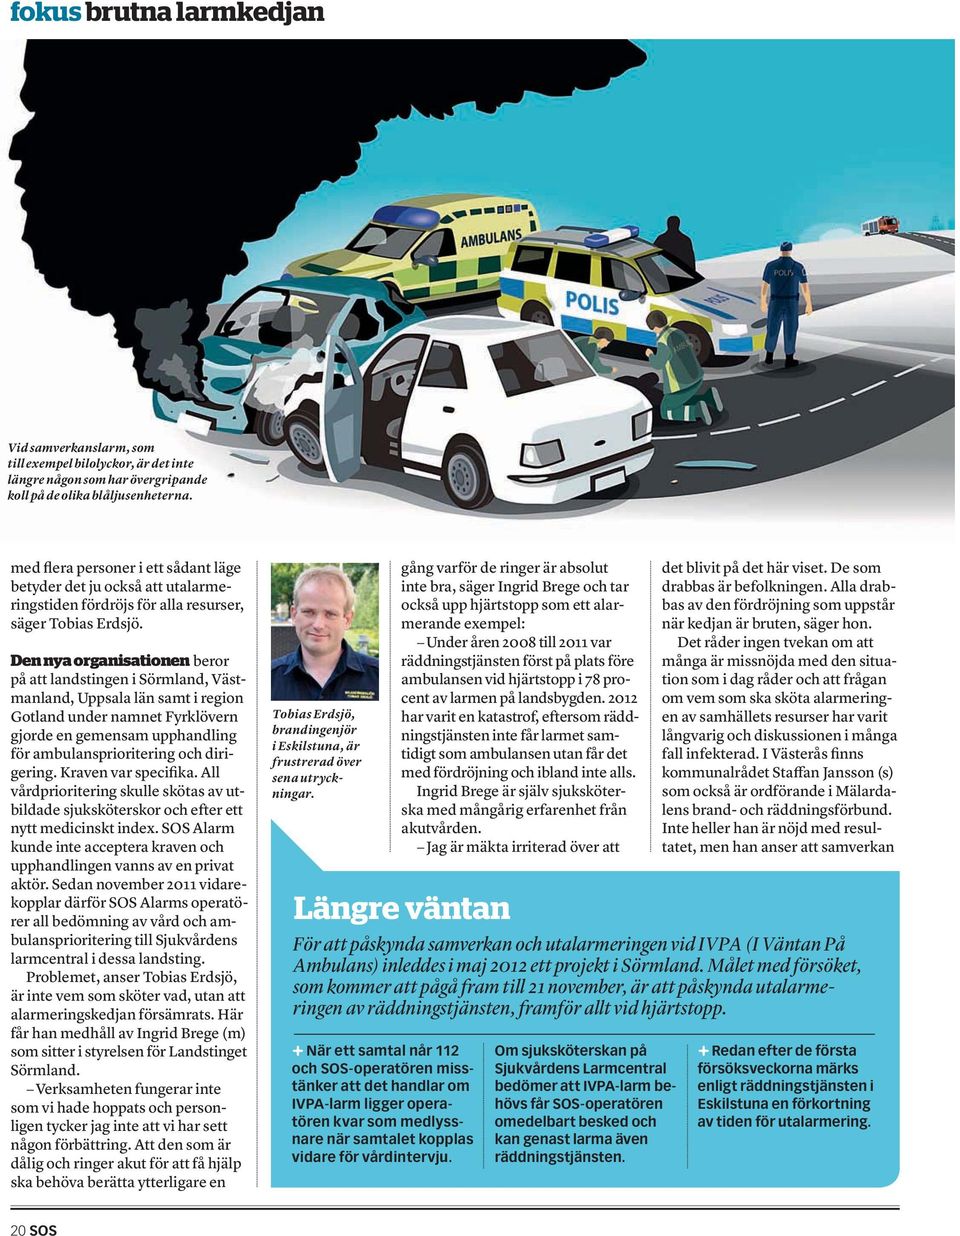 Den nya organisationen beror på att landstingen i Sörmland, Västmanland, Uppsala län samt i region Gotland under namnet Fyrklövern gjorde en gemensam upphandling för ambulansprioritering och